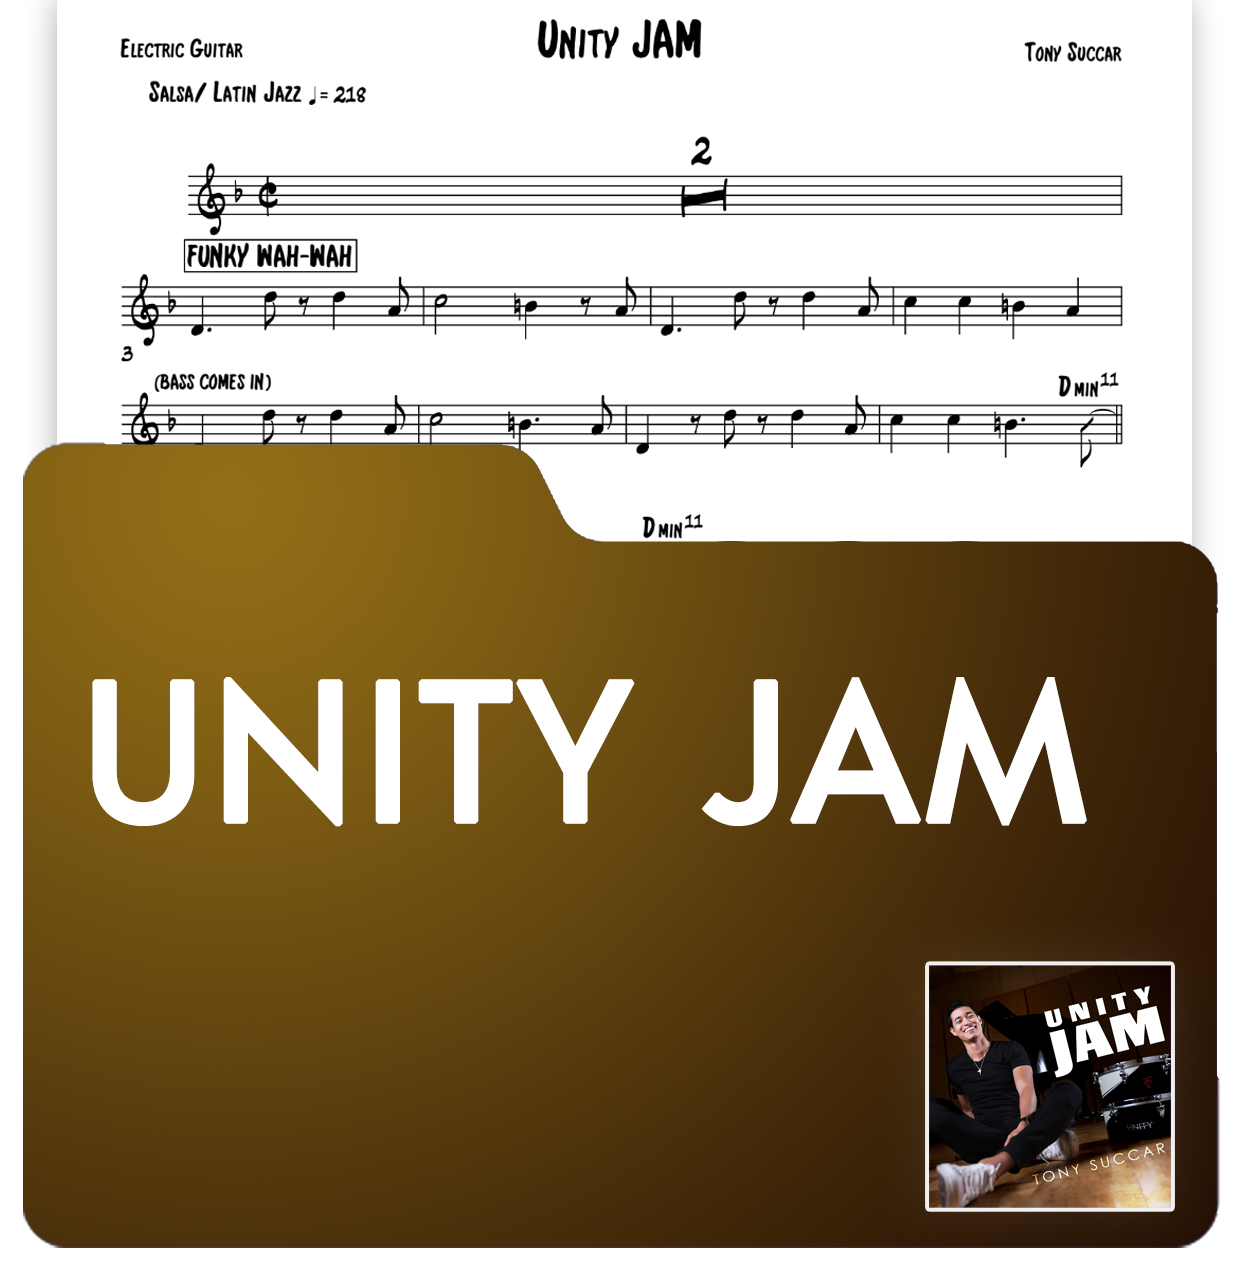 Sheet Music: Unity Jam